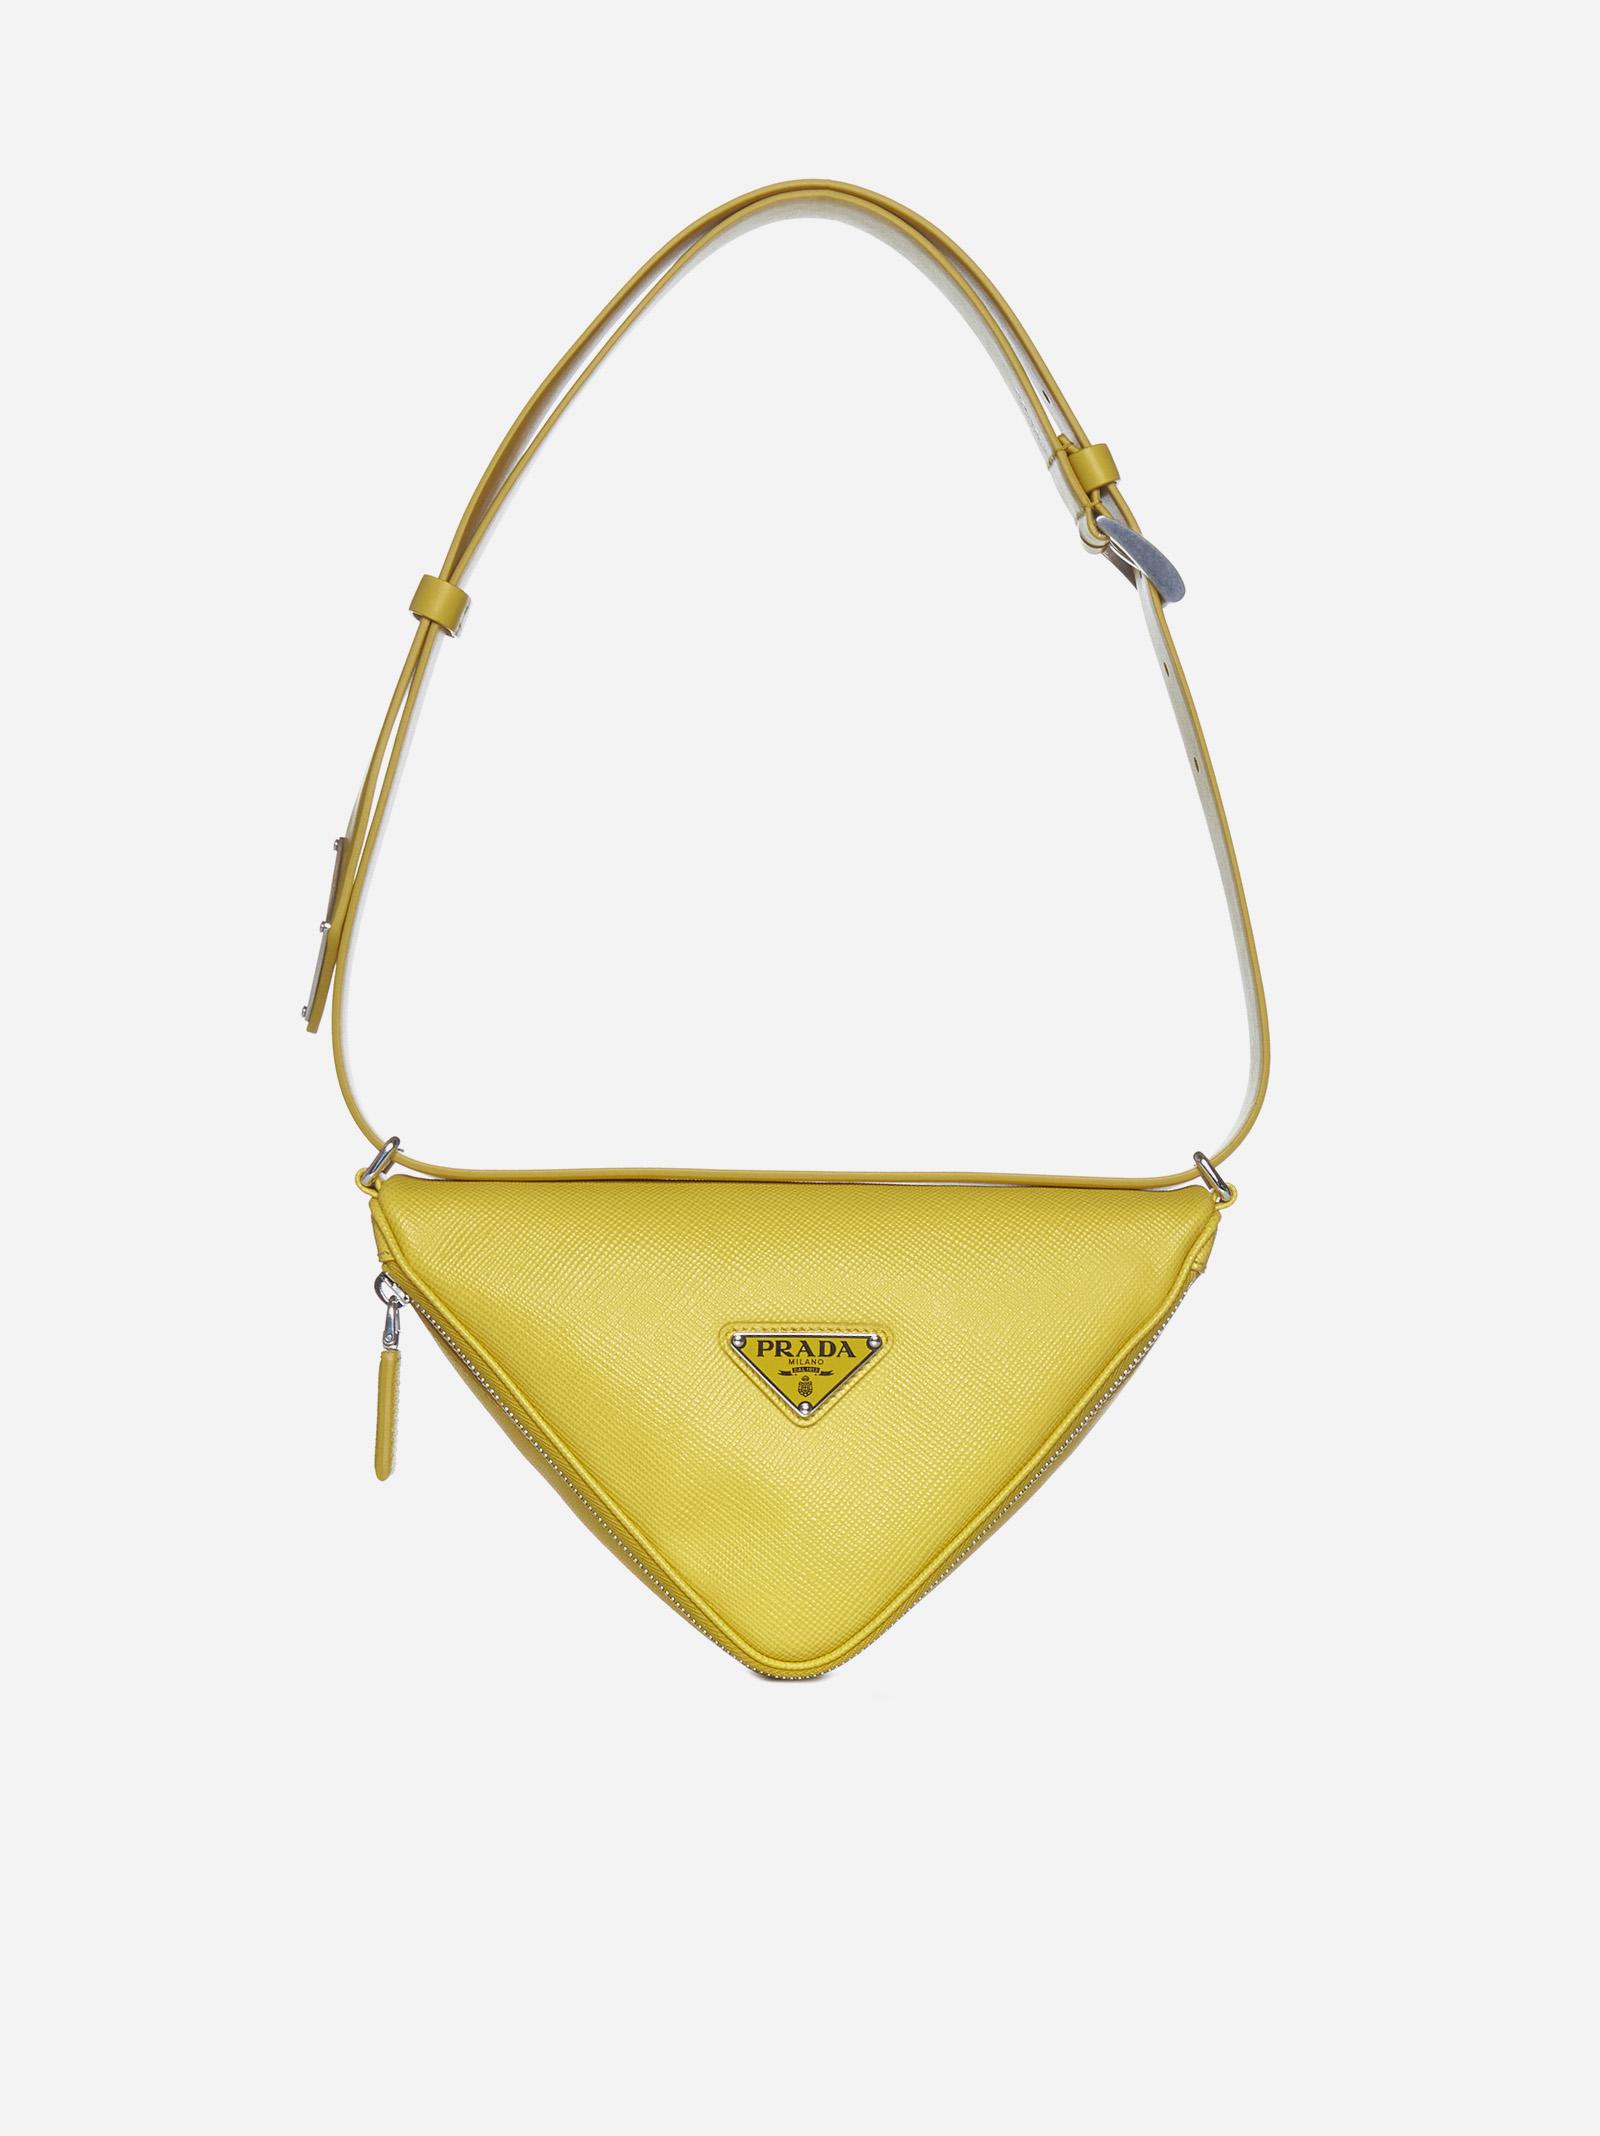 Prada Saffiano Leather Triangle Bag in White | Lyst